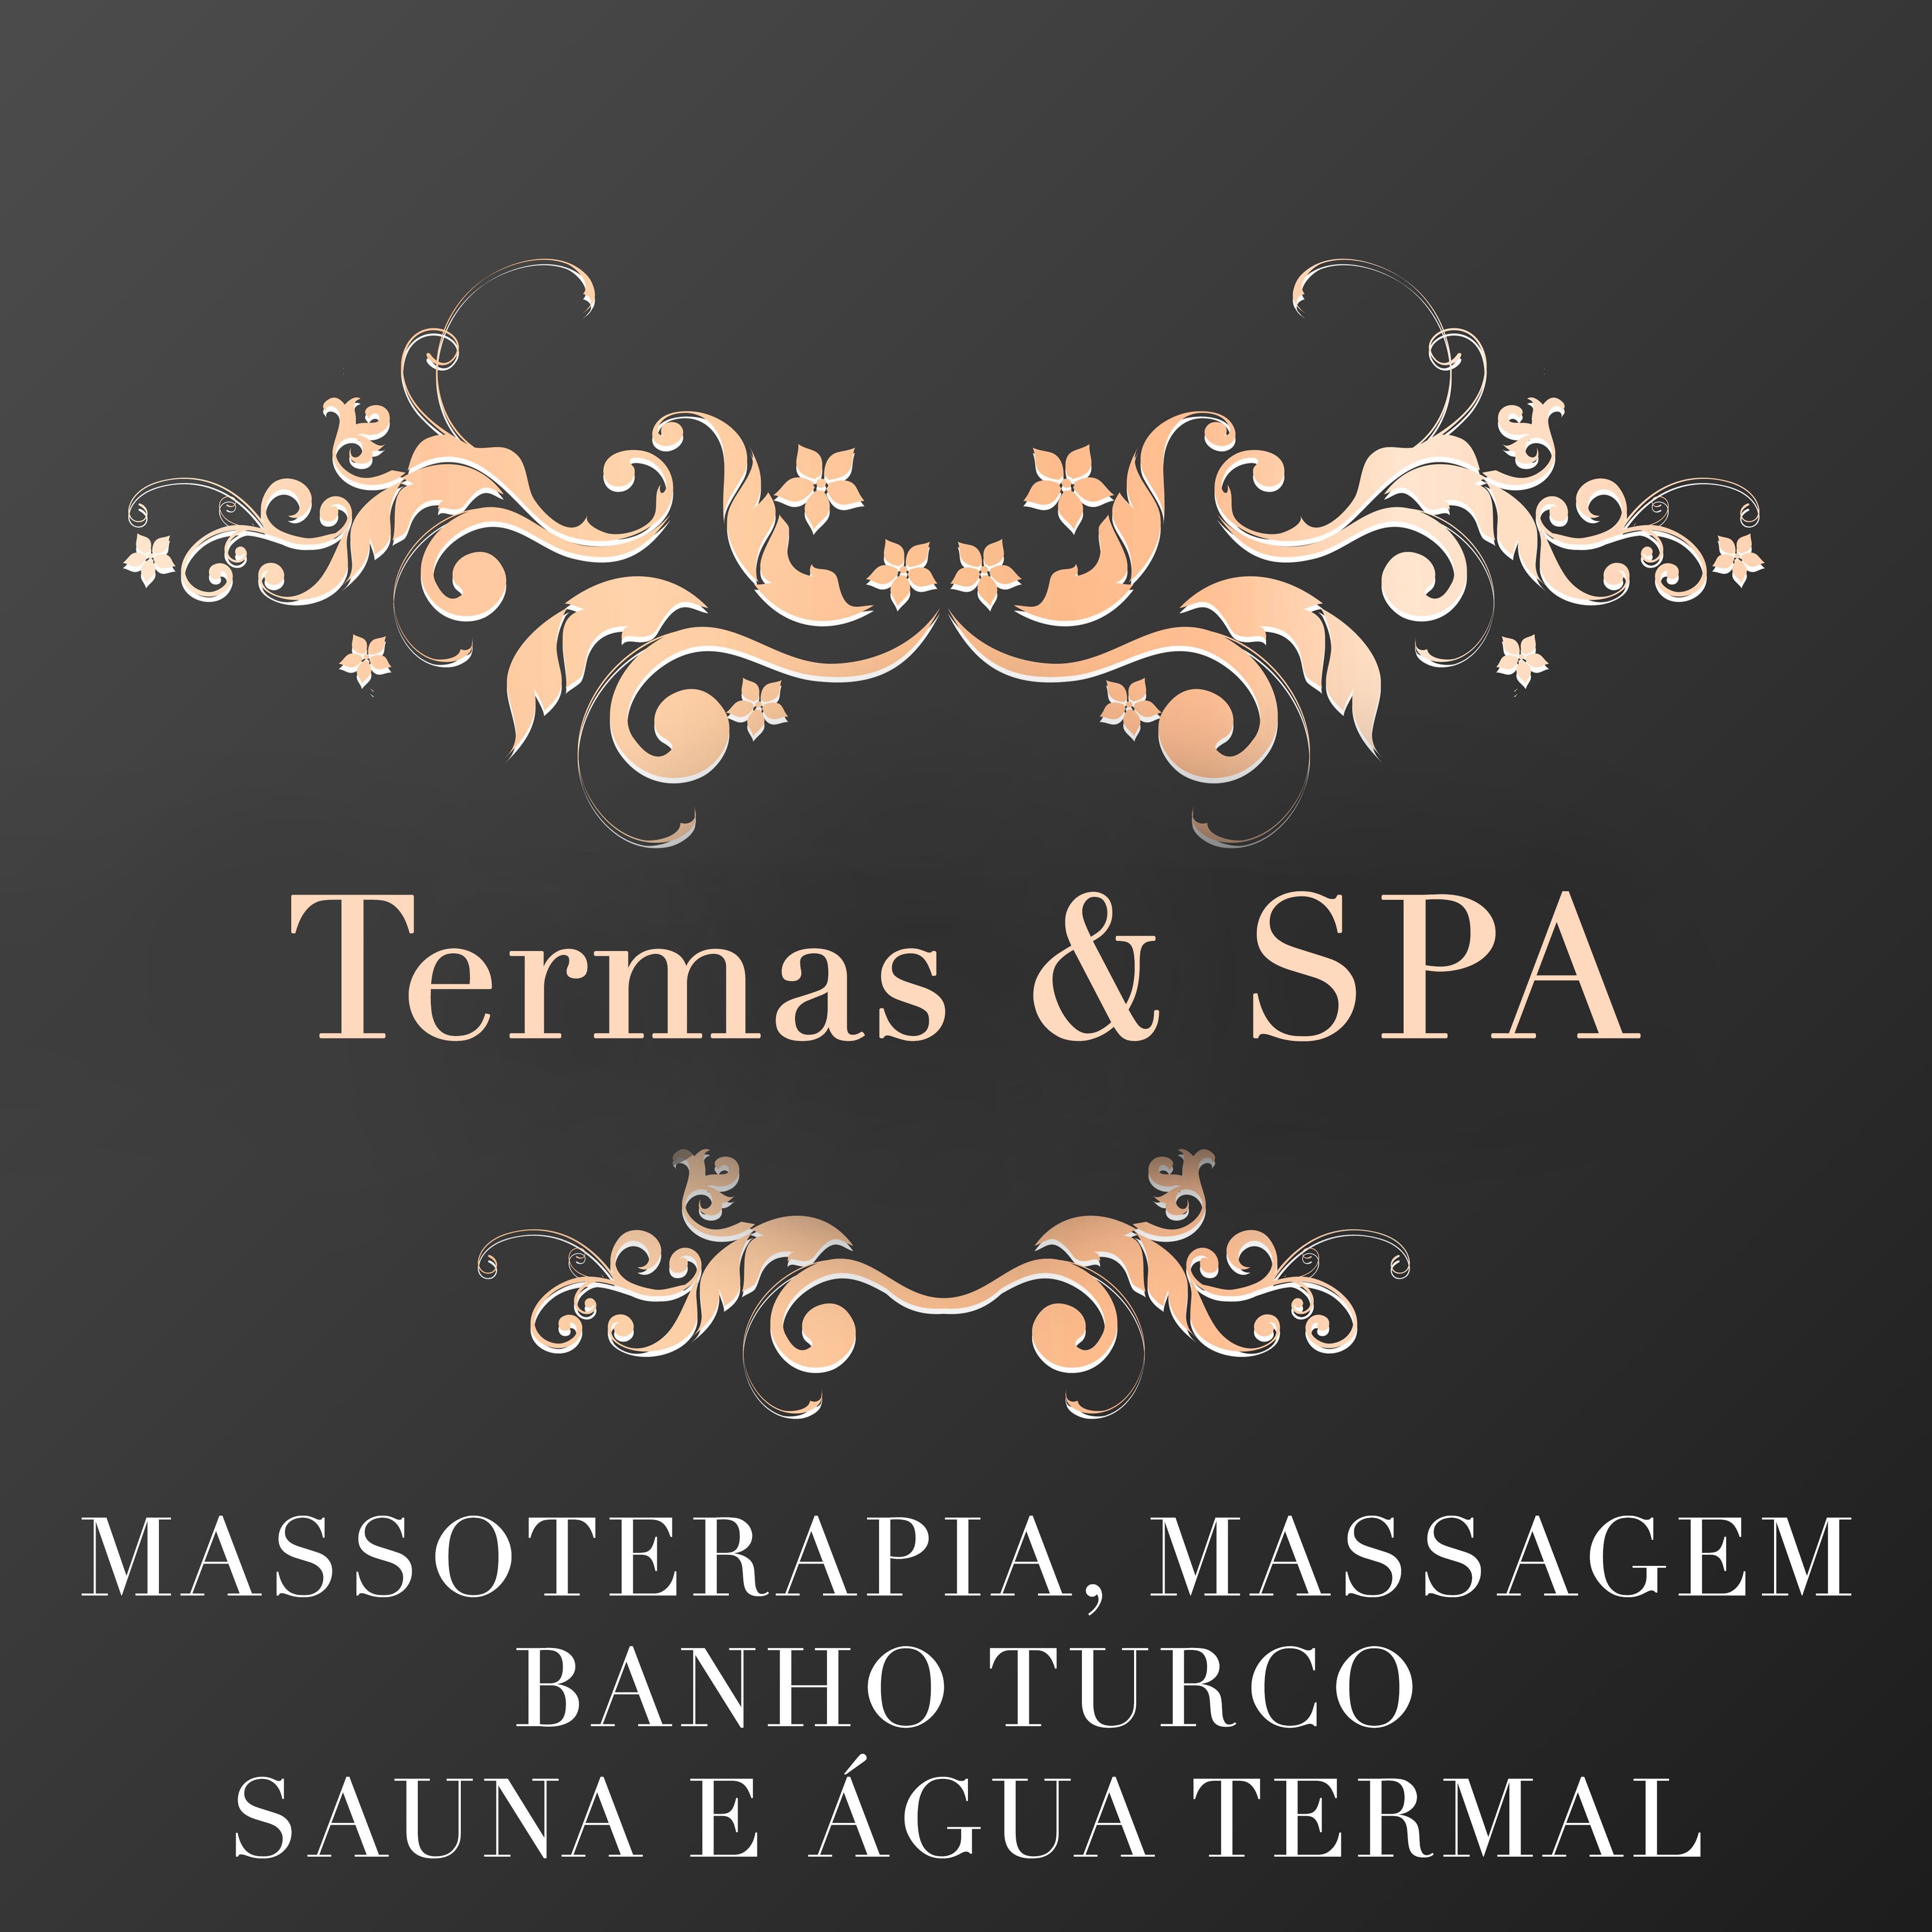 Termas e SPA: Mu sica Relaxante para Hotel, Centros de BemEstar e SPA para Massoterapia, Massagem, Banho Turco e Sauna ene Á gua Termal